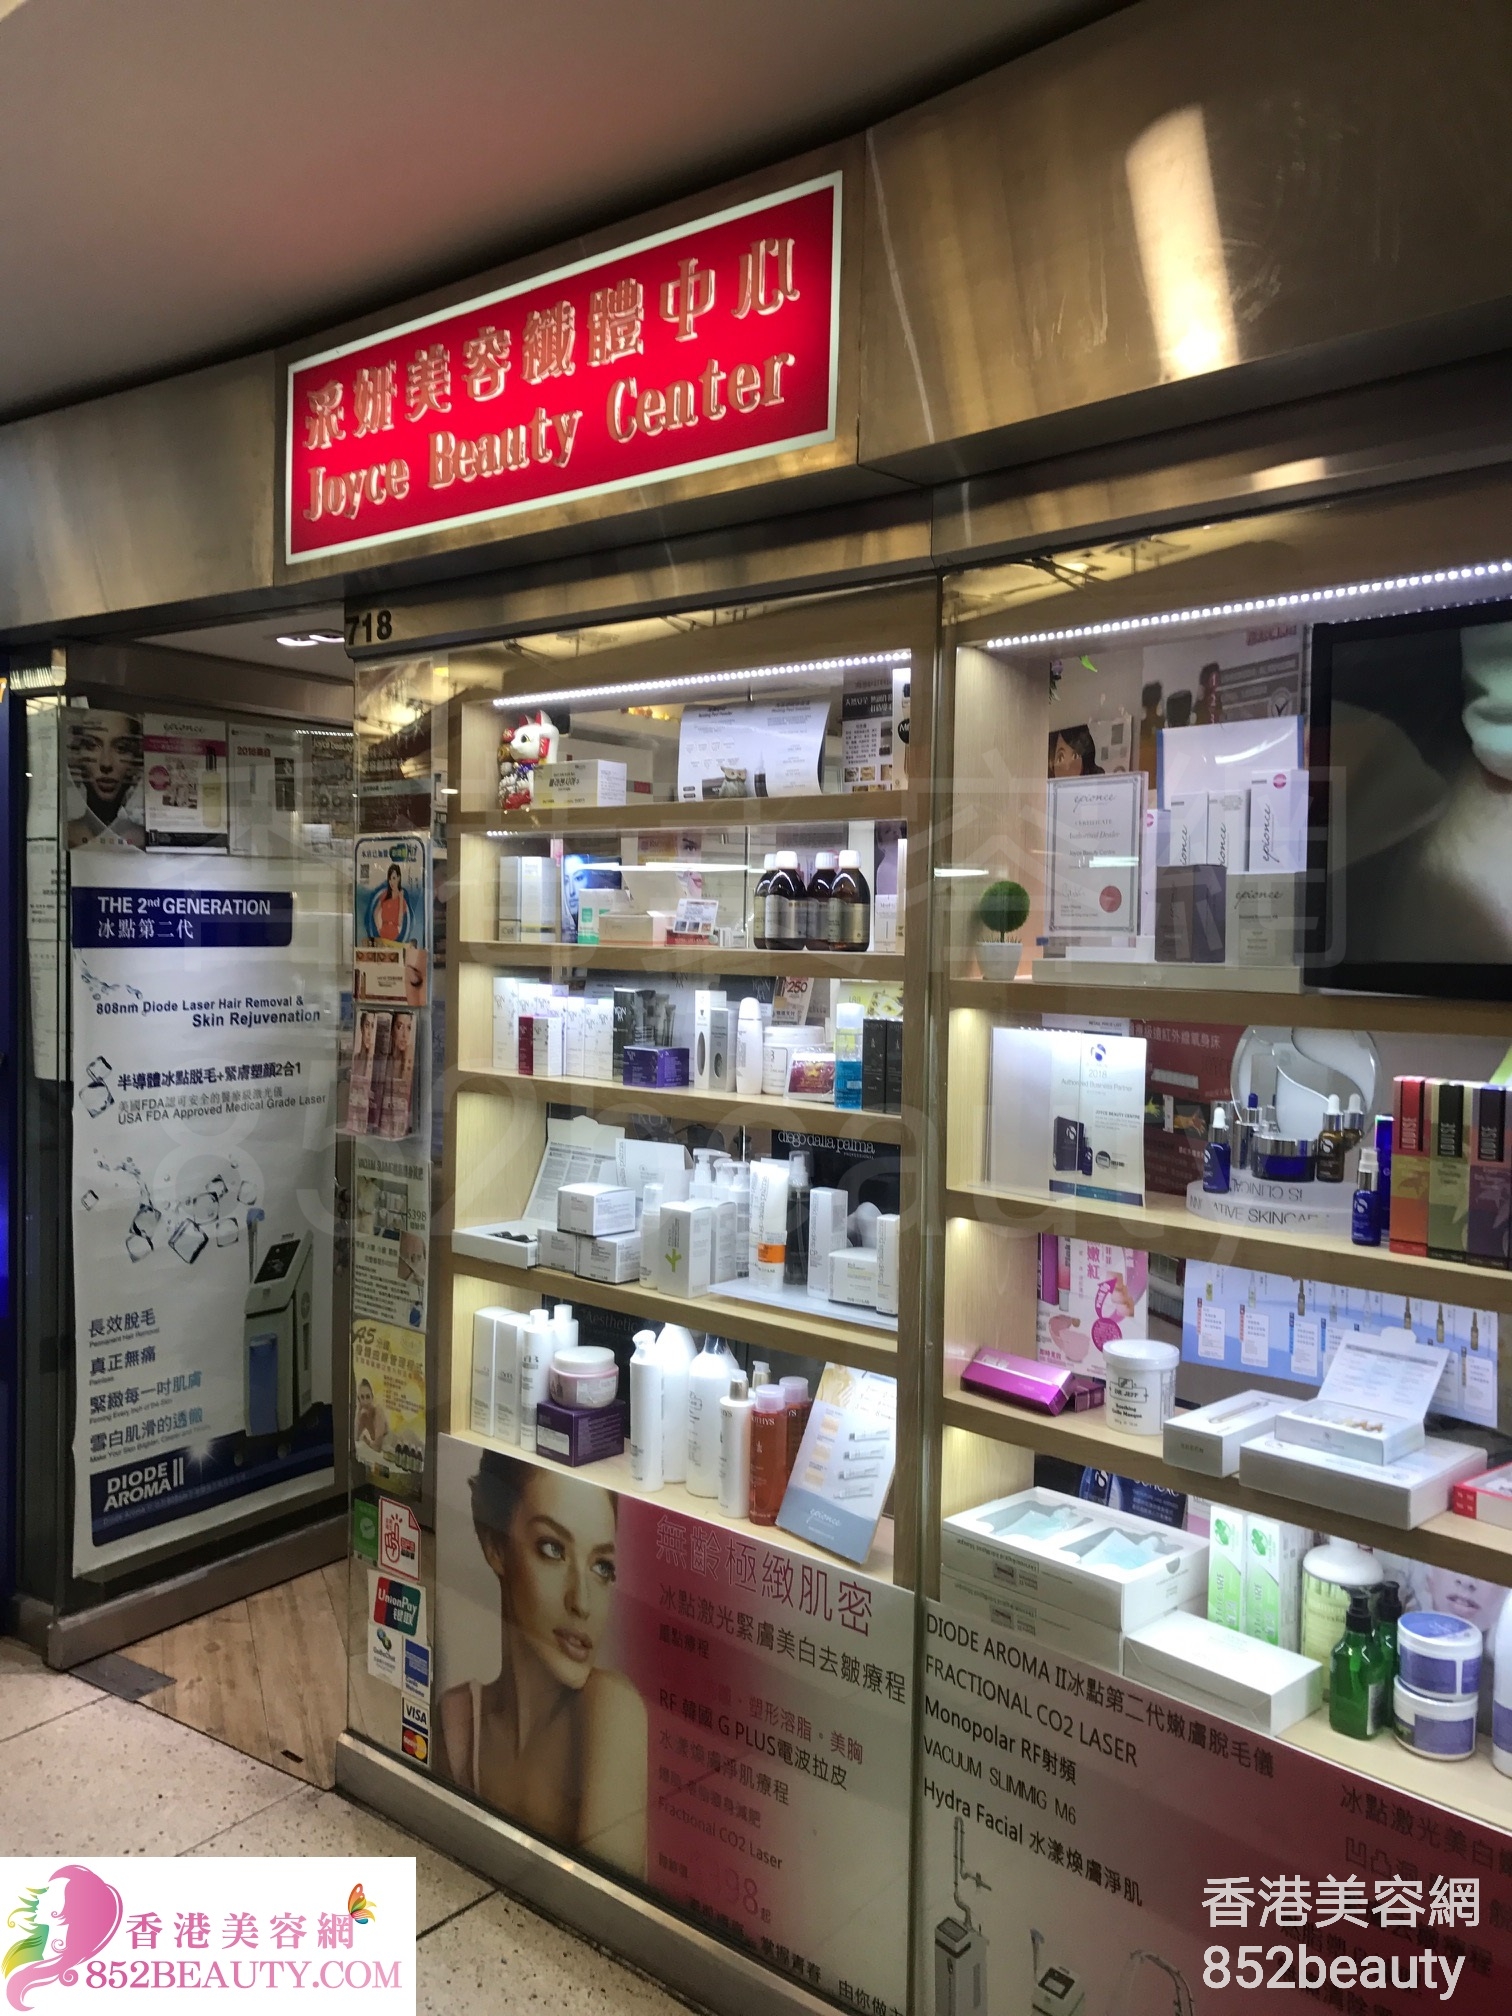 医学美容: 采妍美容纖體中心 Joyce Beauty Center (西九龍中心)